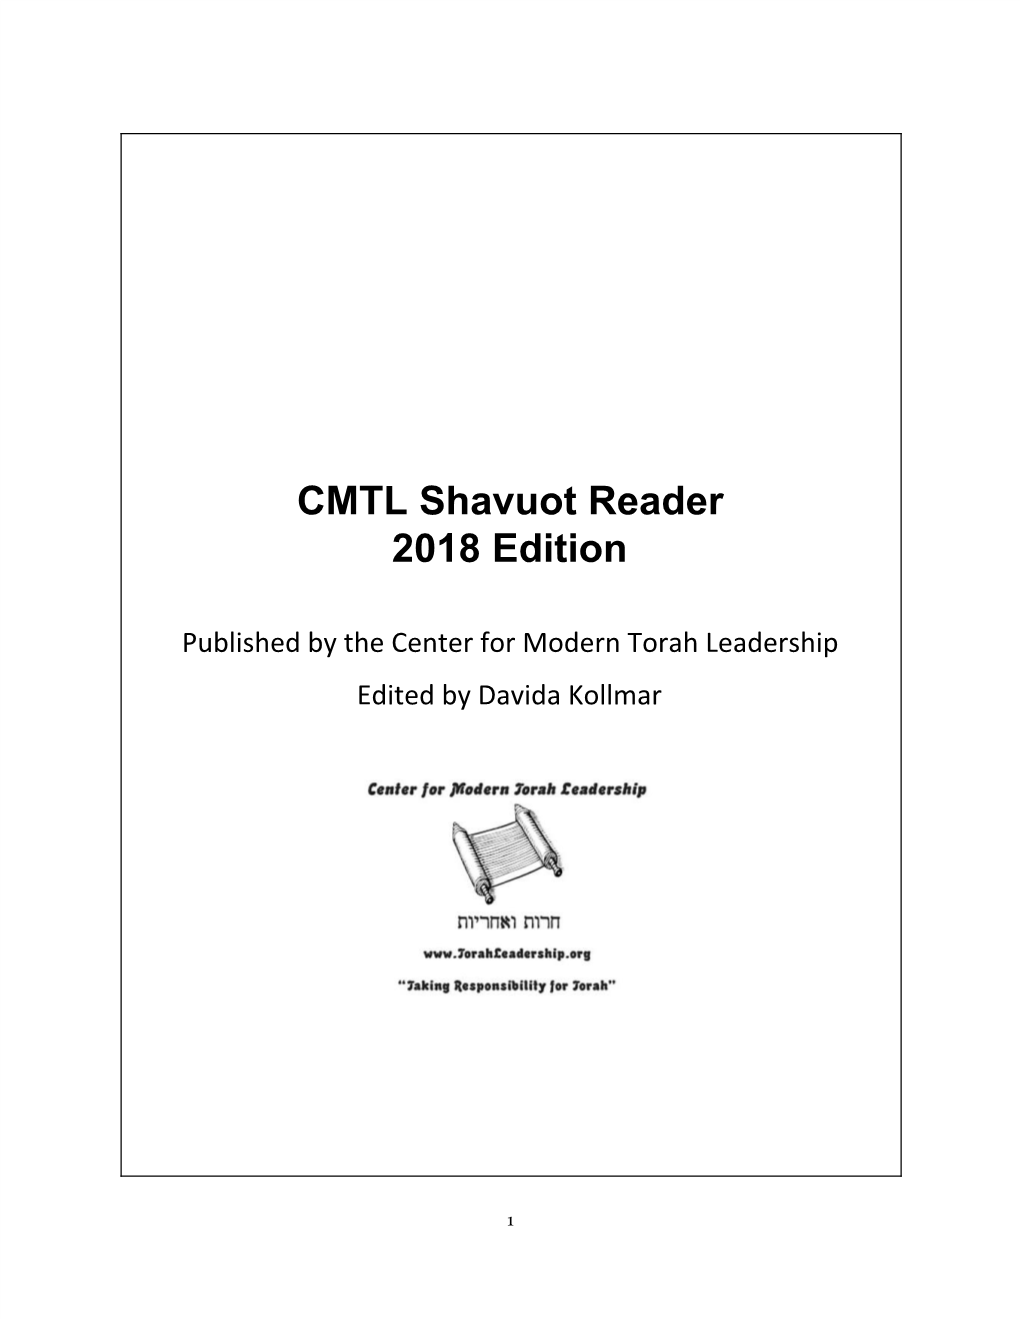 CMTL Shavuot Reader 2018 Edition